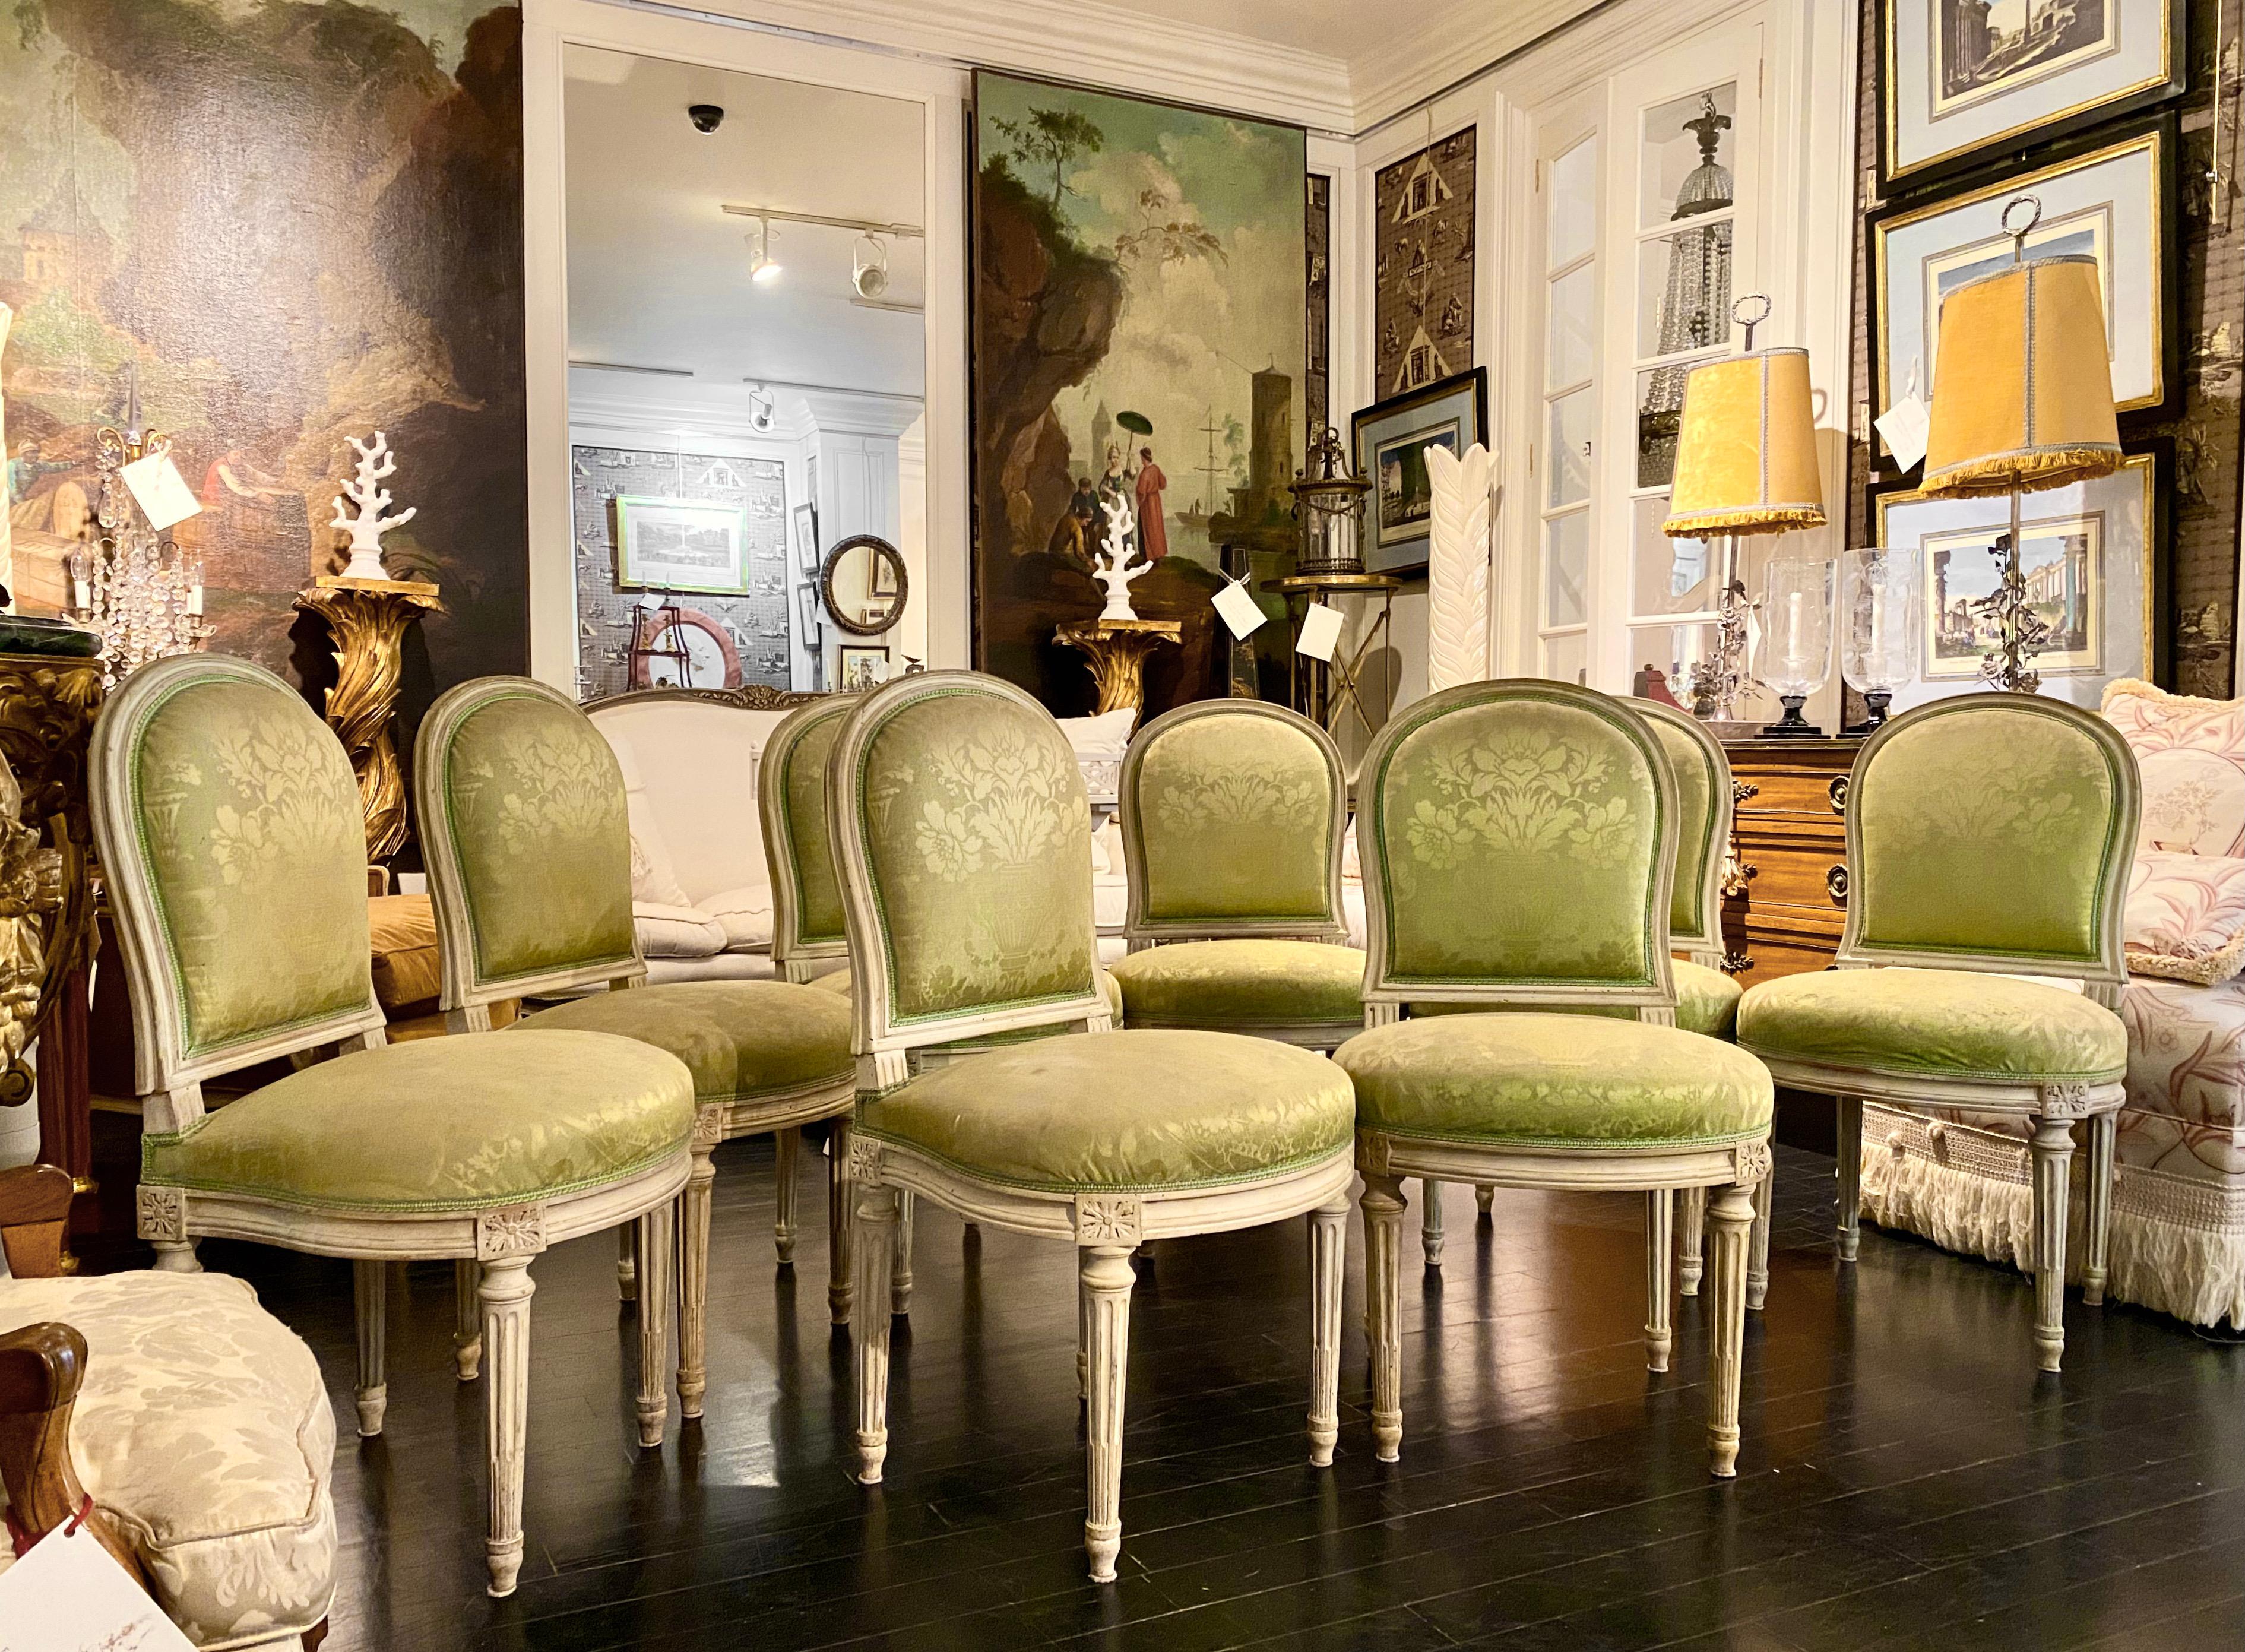 Ensemble de 8 chaises françaises de style Louis XVI.
Bois peint et patiné, tapissé en damas vert pâle, beau modèle.